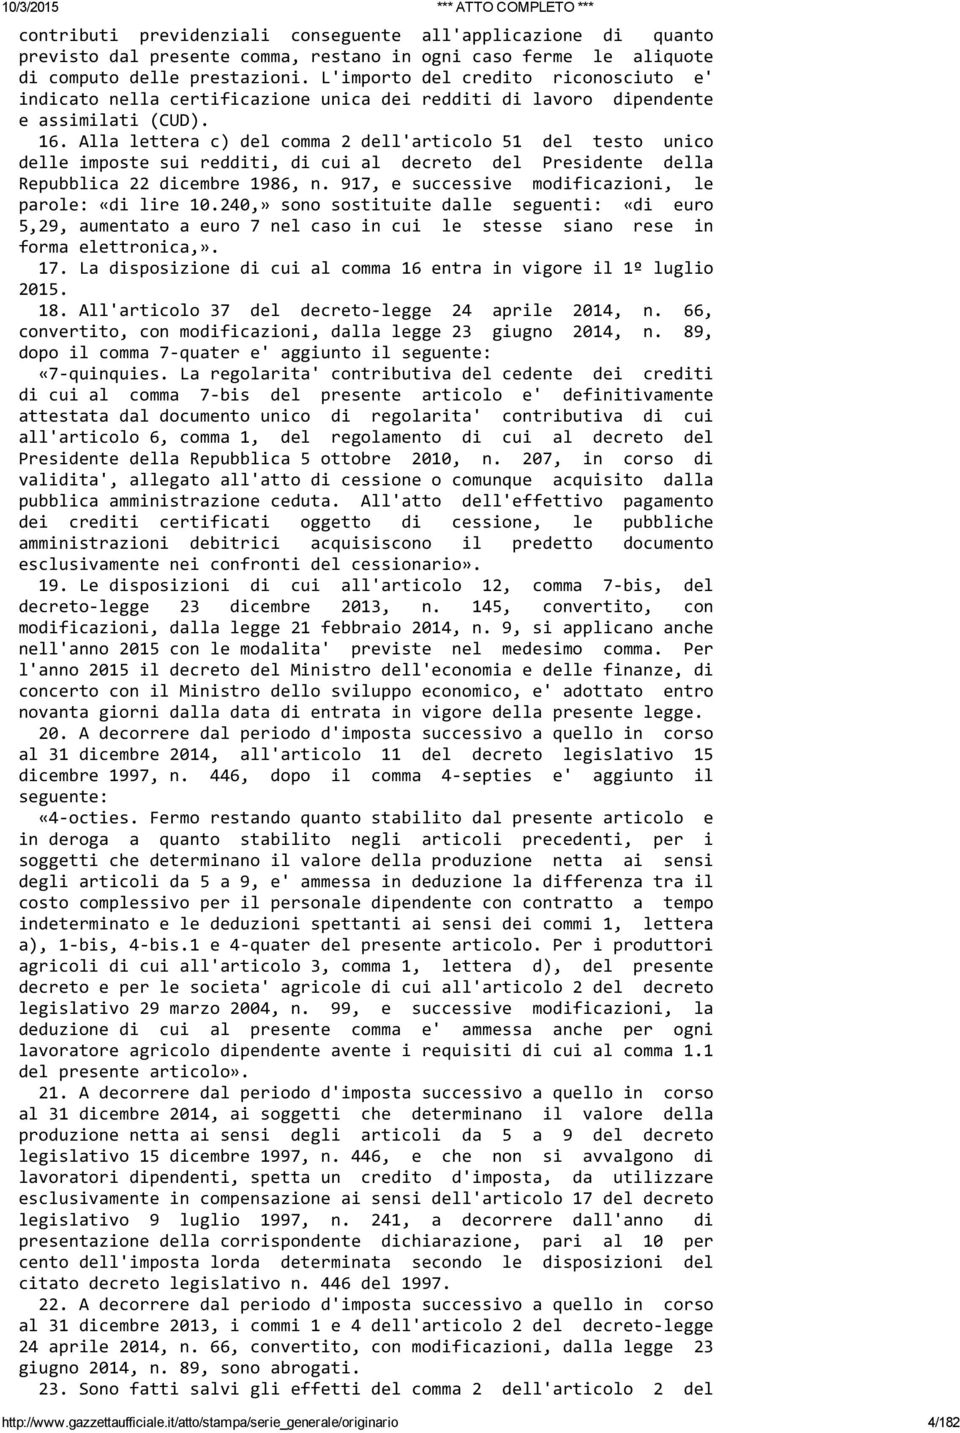 Alla lettera c) del comma 2 dell'articolo 51 del testo unico delle imposte sui redditi, di cui al decreto del Presidente della Repubblica 22 dicembre 1986, n.